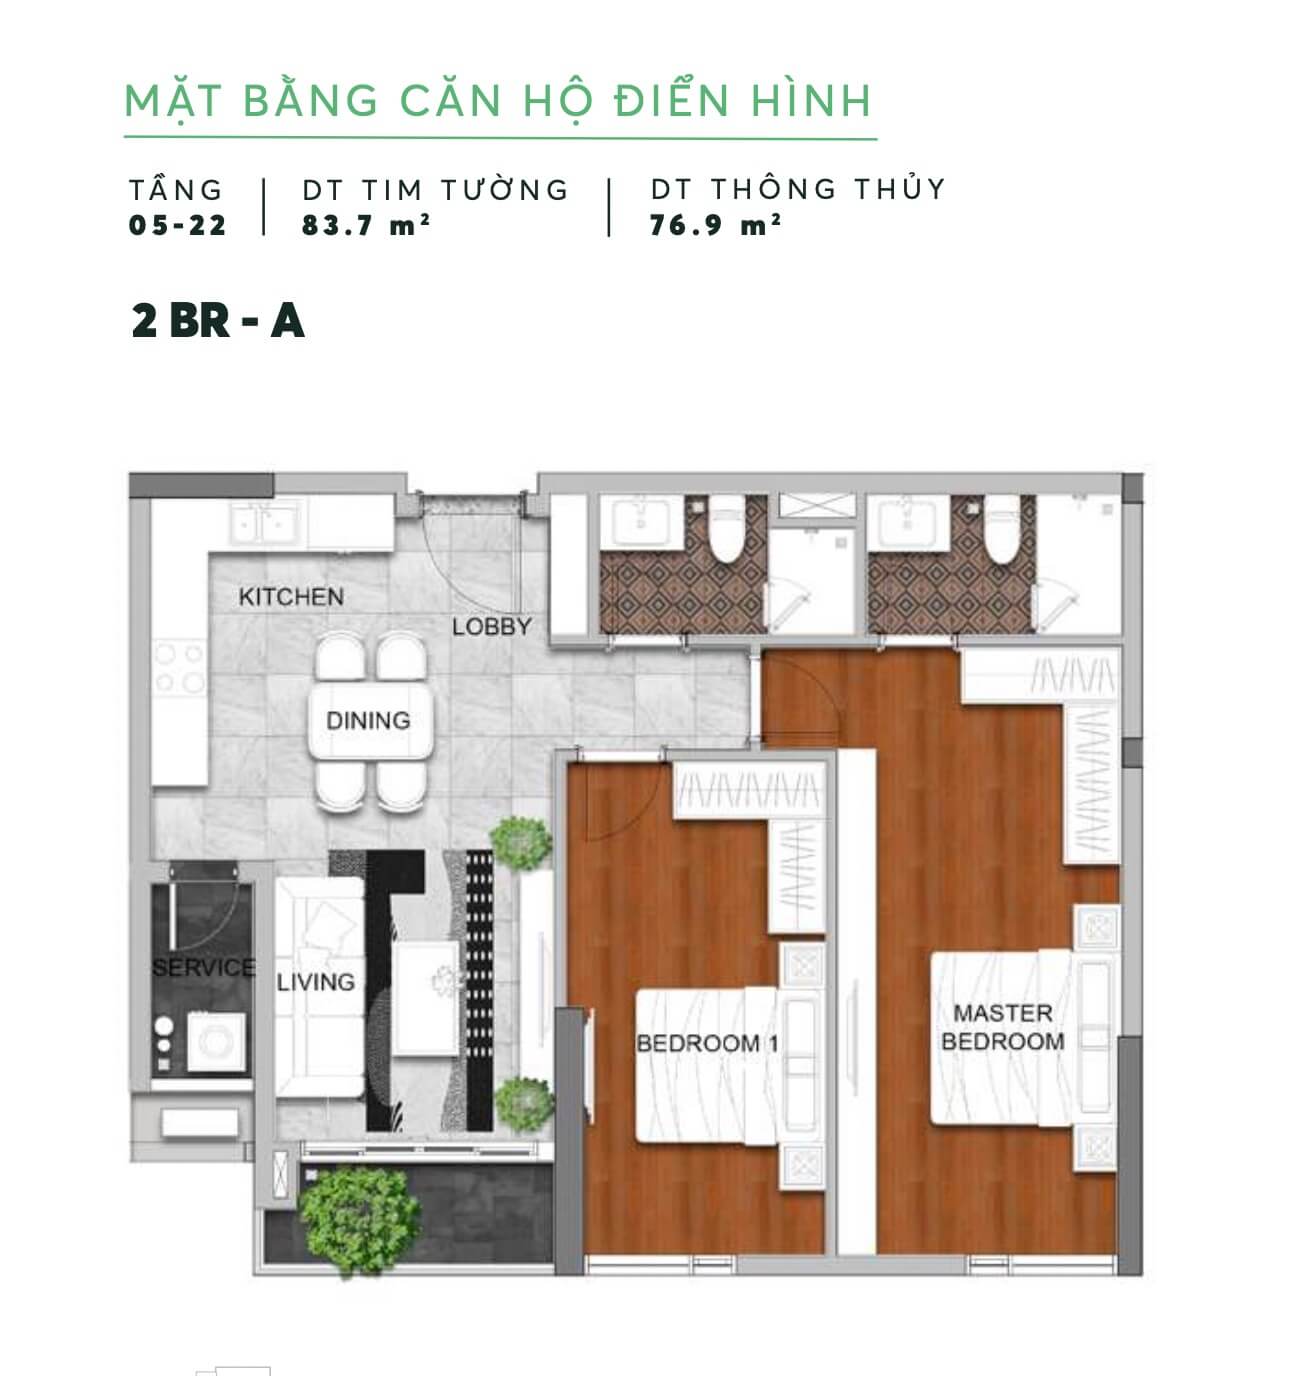 Mat Bang Can Ho Dien Hinh 13